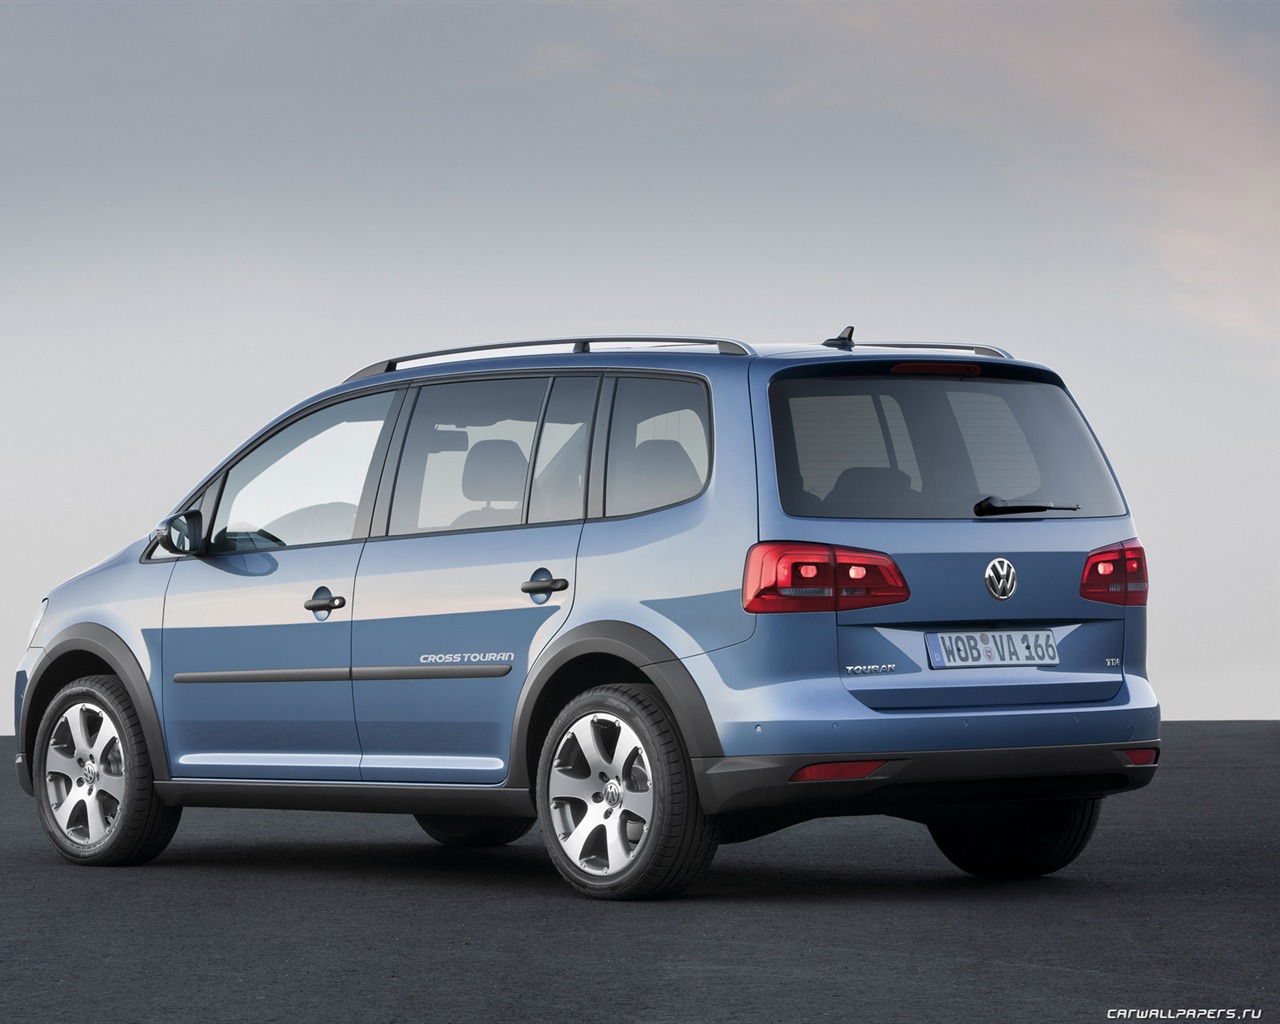 Volkswagen CrossTouran - 2010 大众7 - 1280x1024